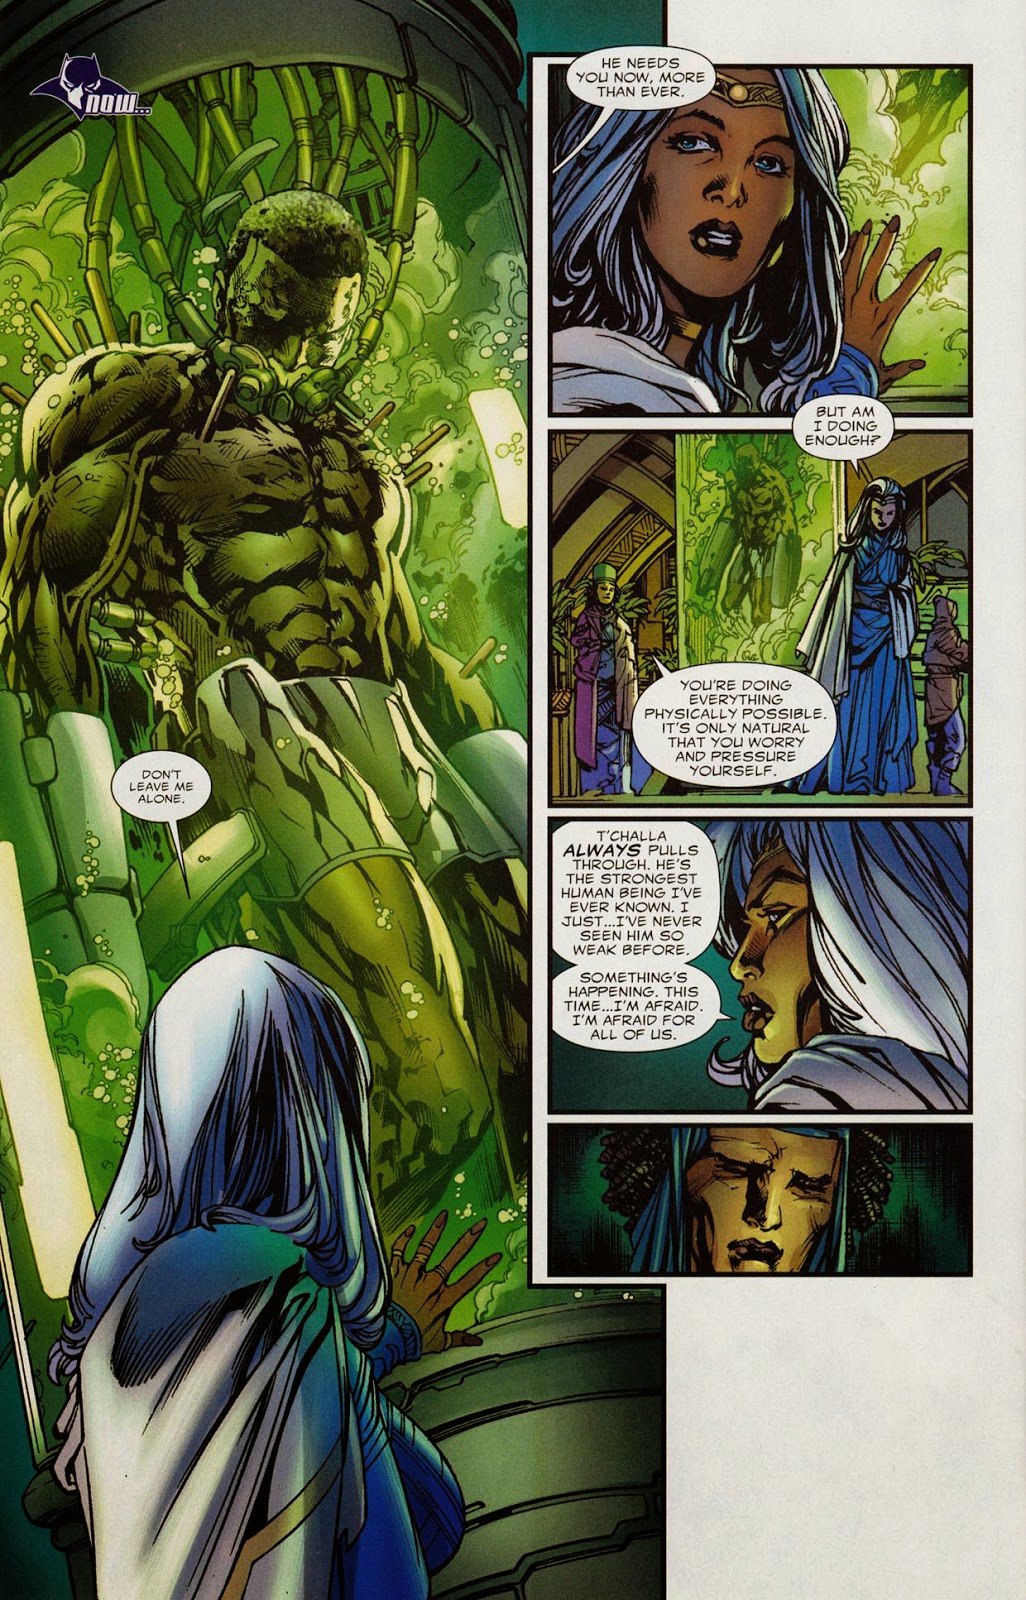 Shirtless Superheroes: Namor The Submariner & Black Panther